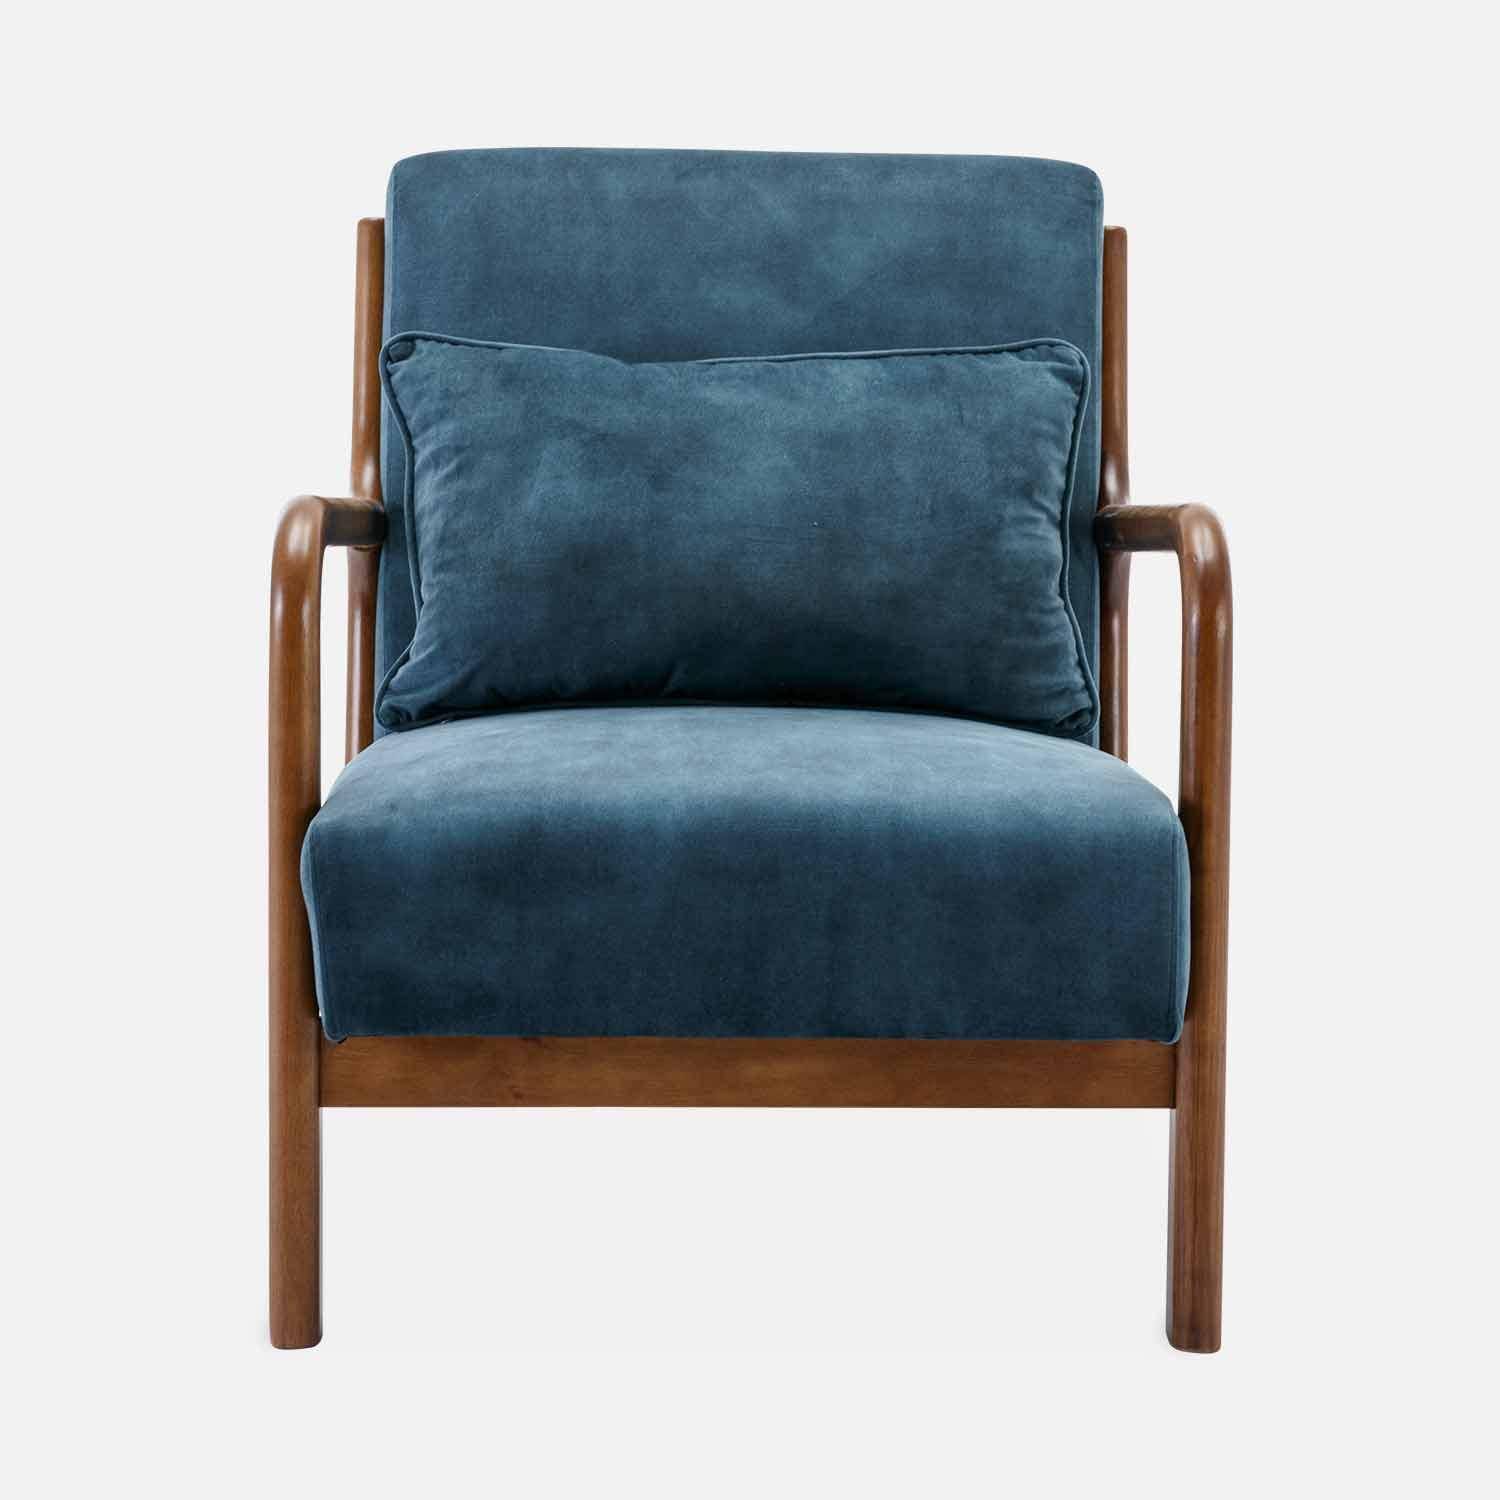 Sessel mit petrolblauem Samtbezug, Beine aus nussbaumfarbenem Hevea-Holz, 1-sitzig gerade fest, skandinavische Zirkelbeine Photo5